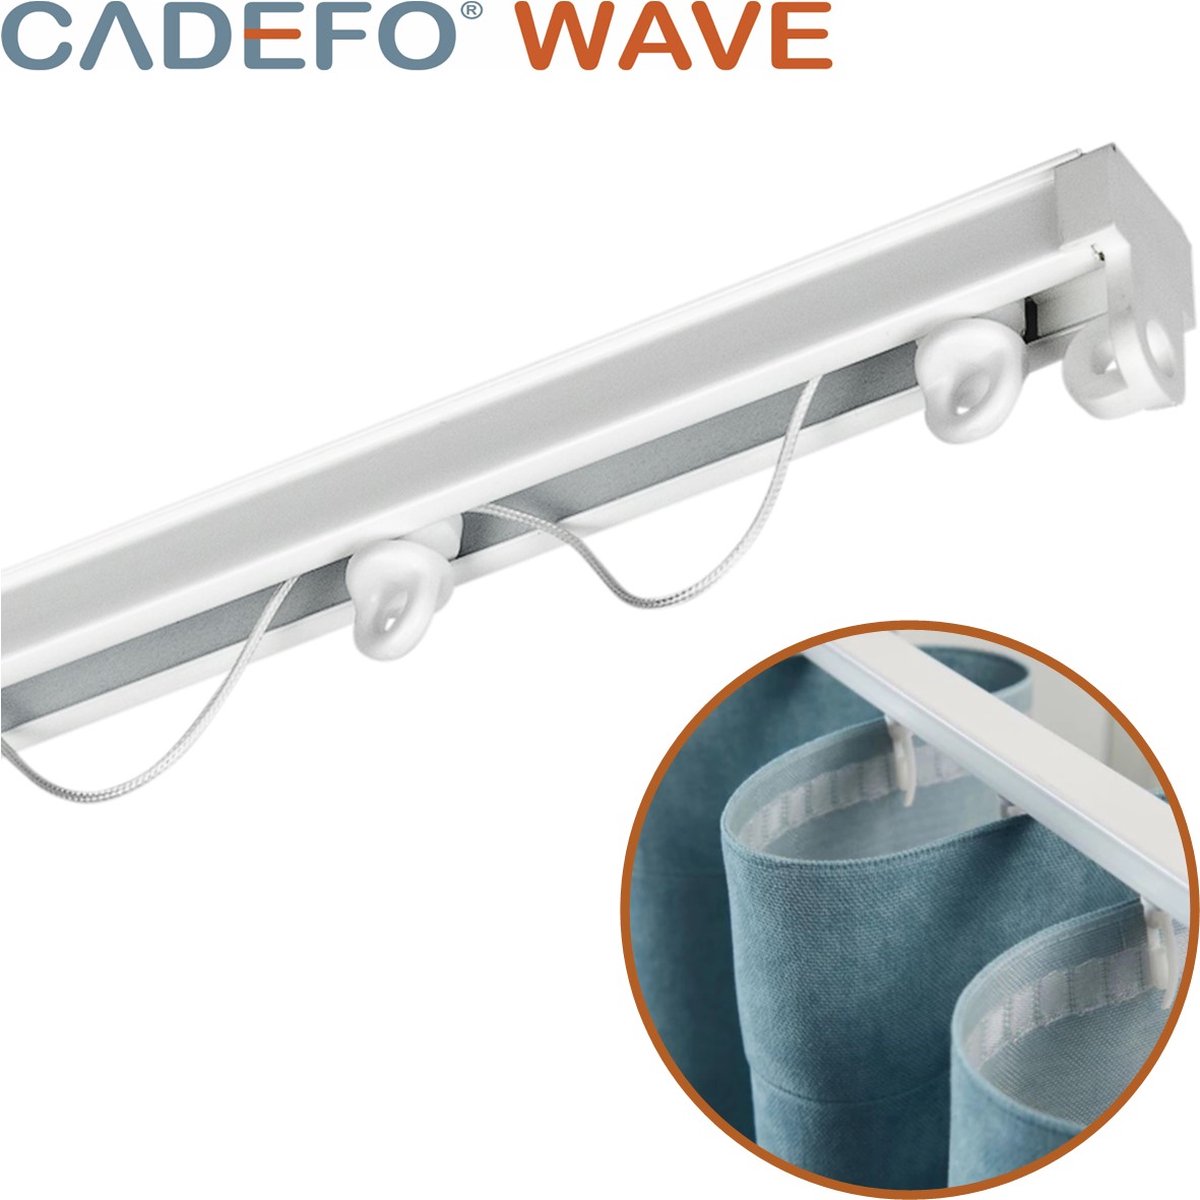 CADEFO WAVE (251 - 300 cm) Gordijnrails - Compleet op maat! - UIT 1 STUK - Leverbaar tot 6 meter - Plafondbevestiging - Lengte 272 cm